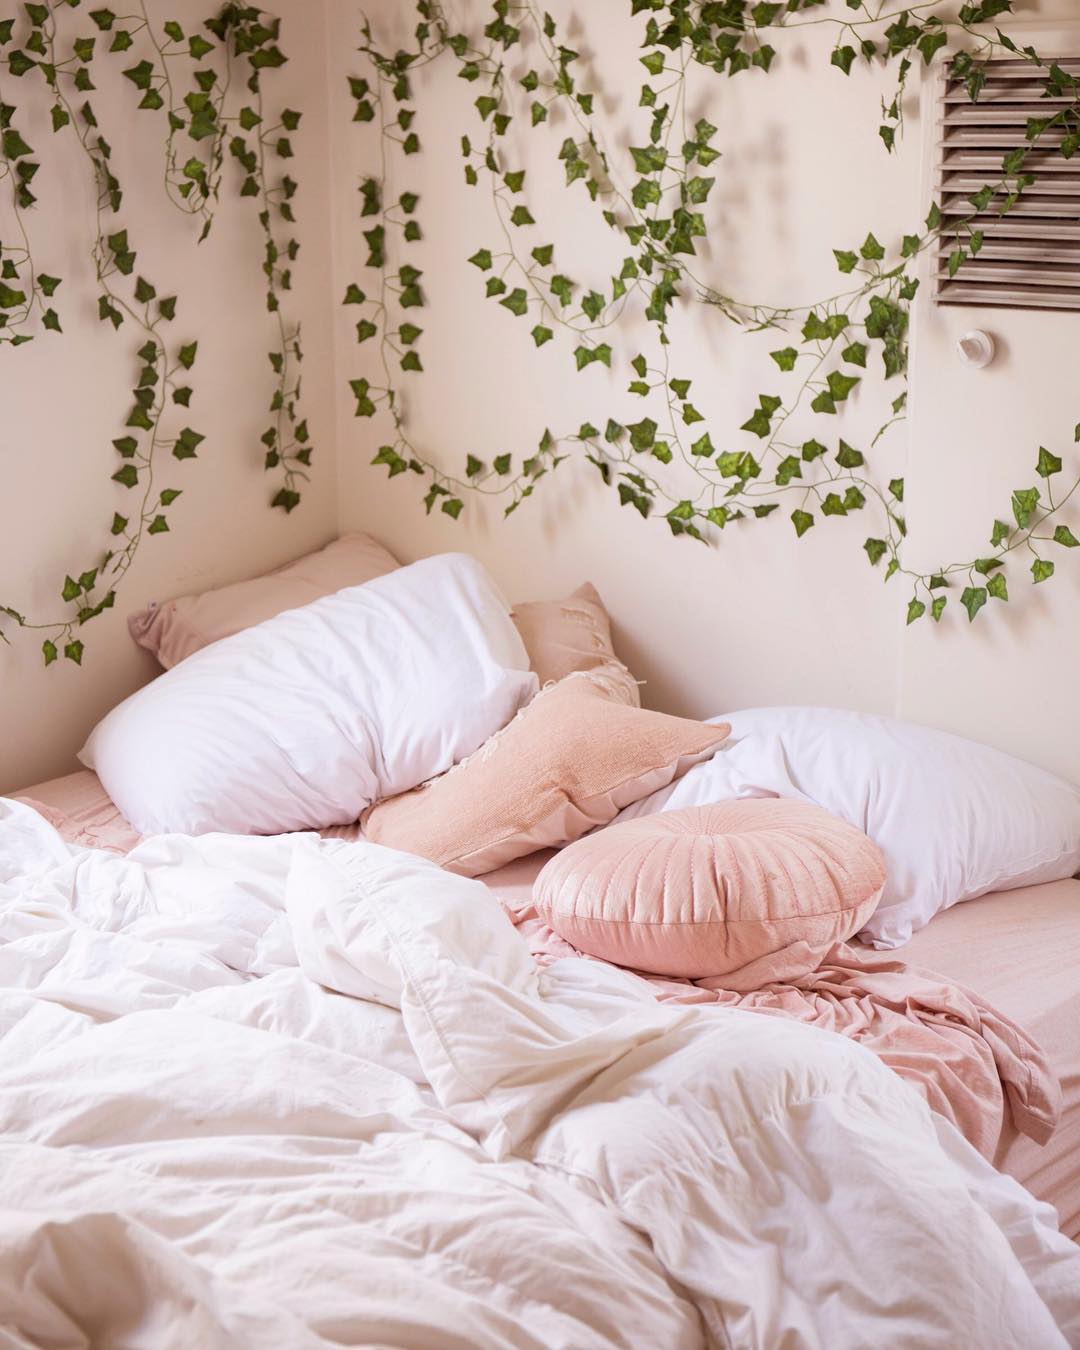 chambre rose et verte lierre lit coussins - blog déco - clem around the corner